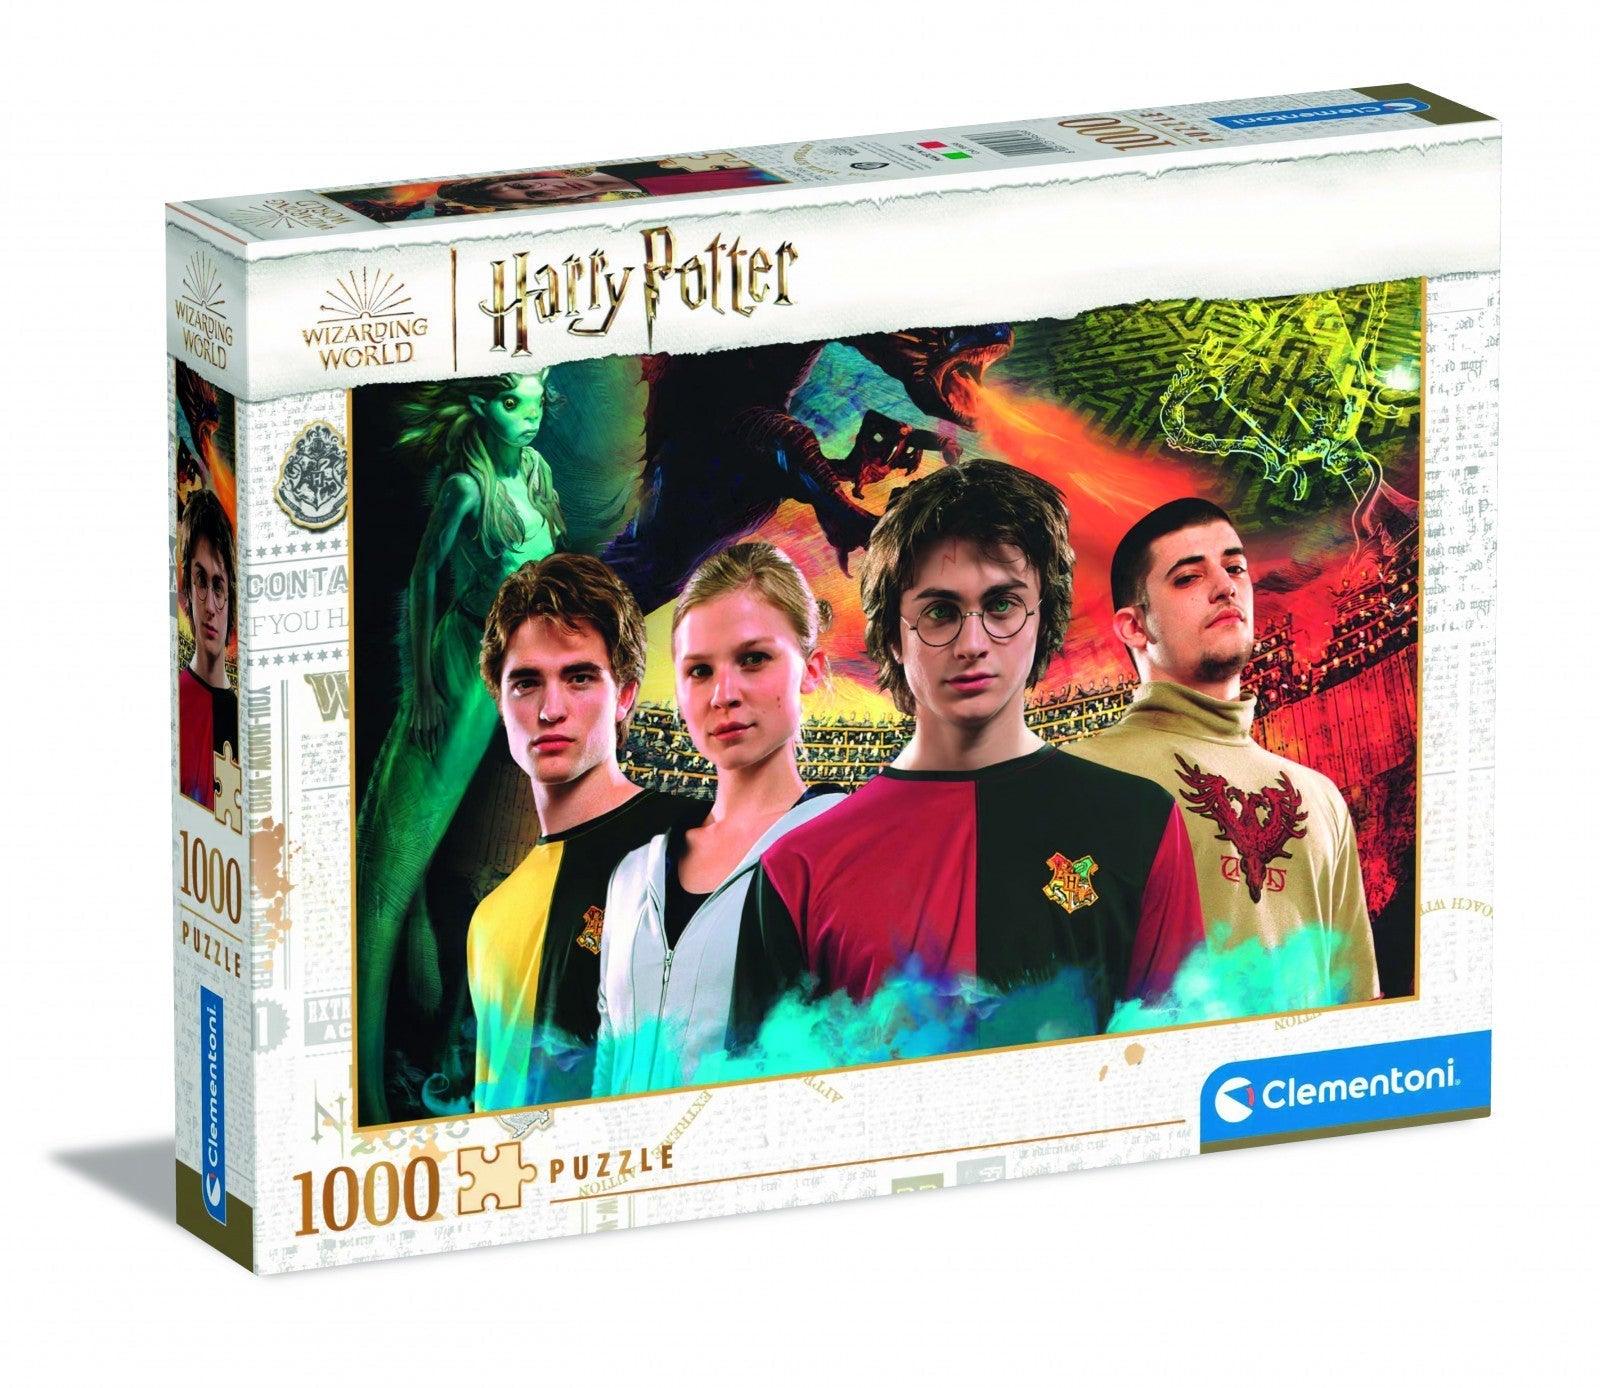 VR-97667 Clementoni Puzzle Harry Potter Triwizard Cup 1000 pieces - Clementoni - Titan Pop Culture